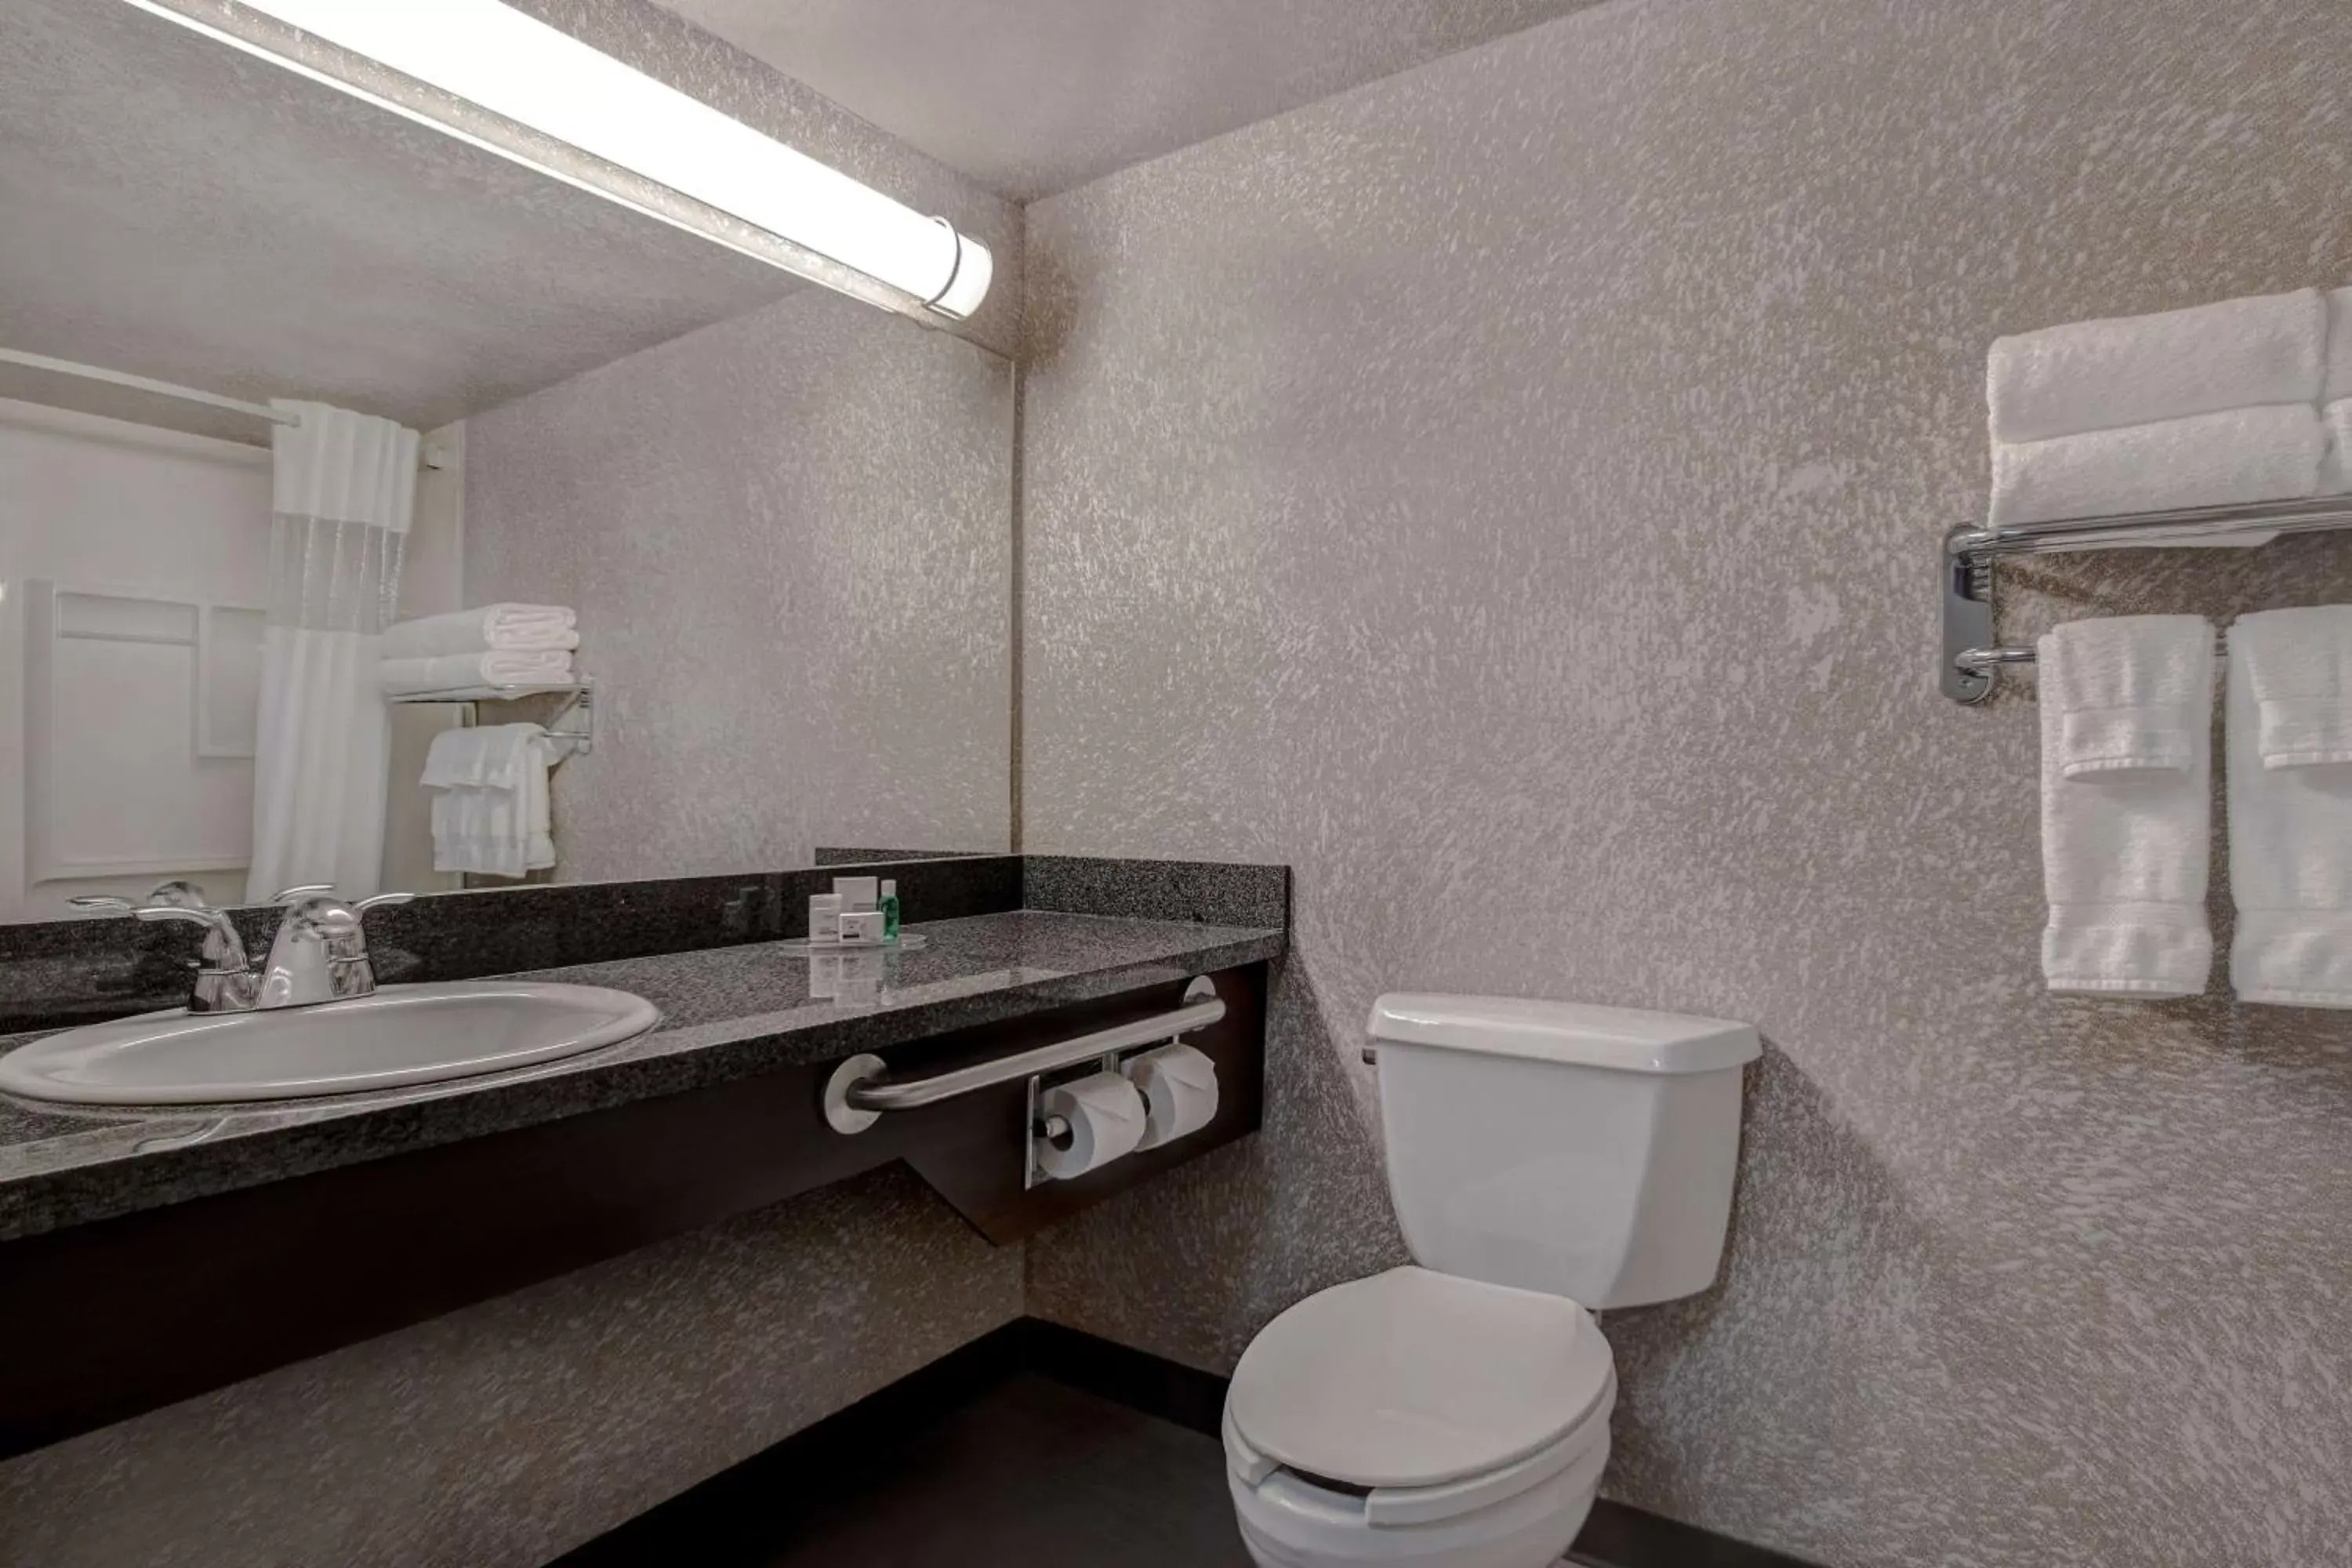 TV and multimedia, Bathroom in Days Inn by Wyndham Medicine Hat